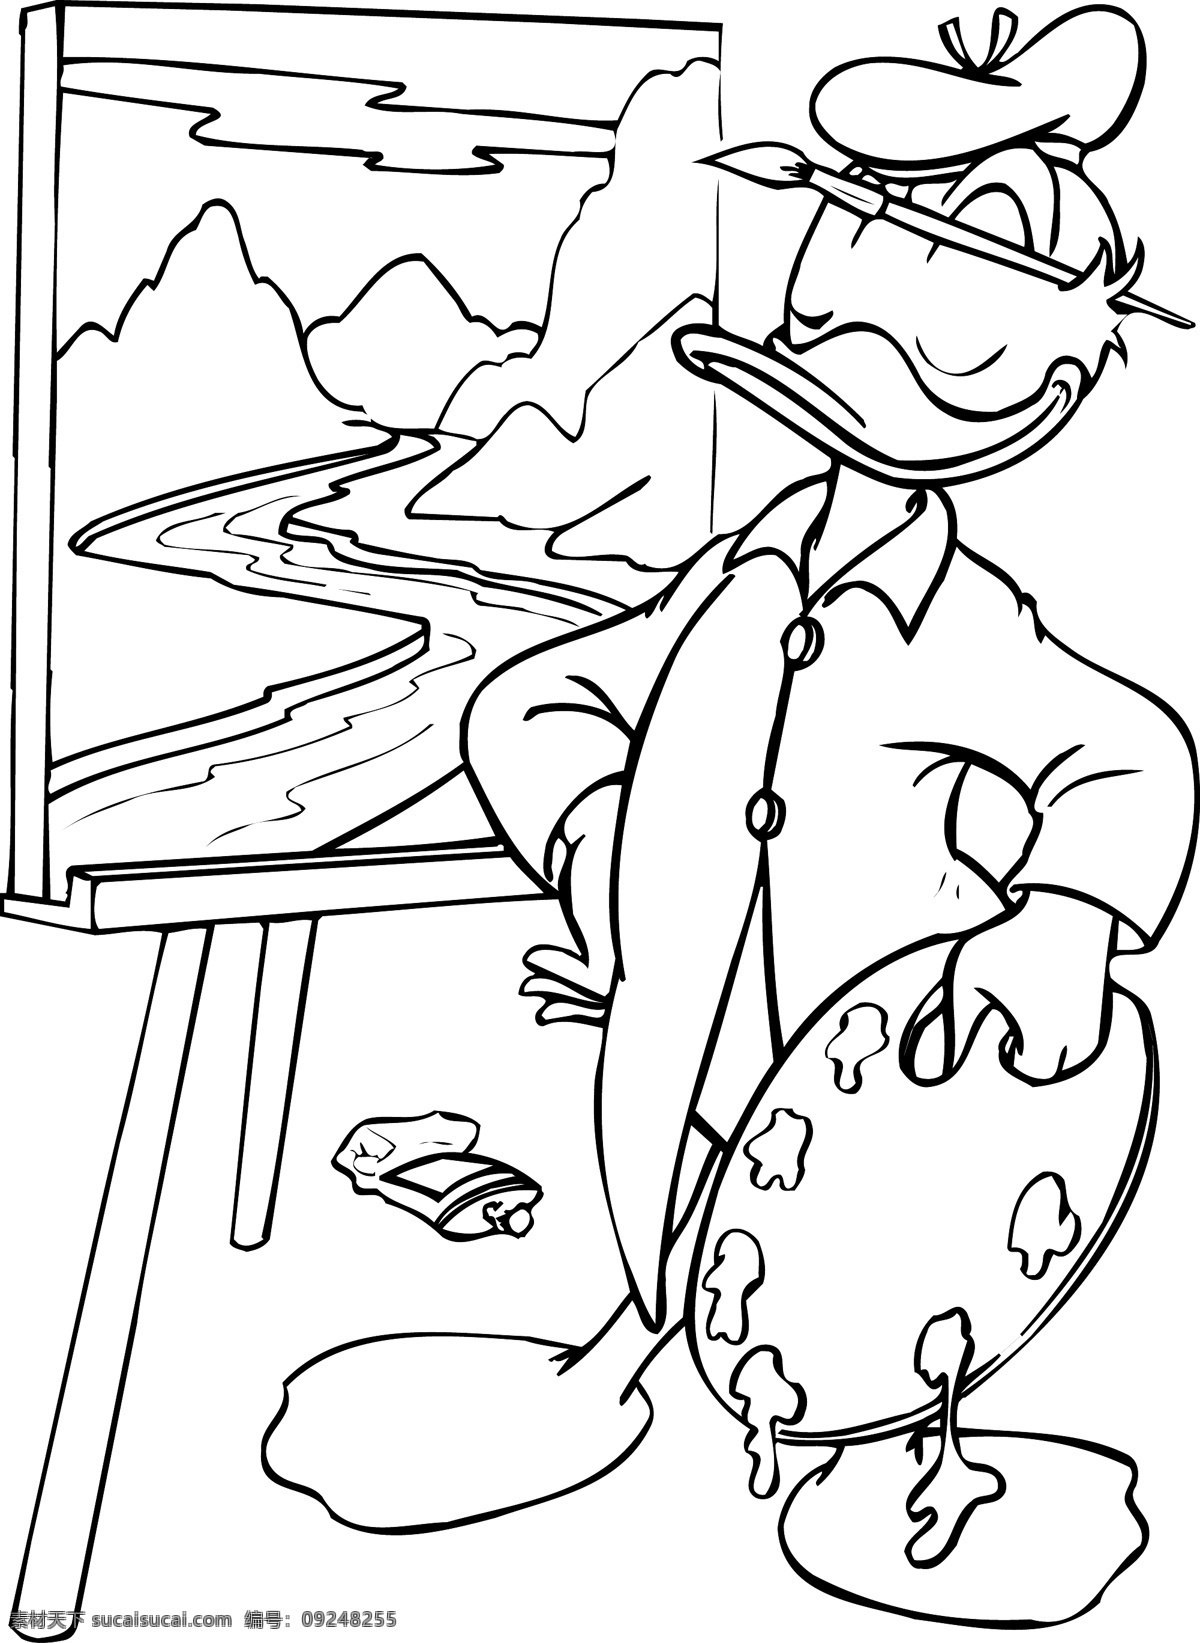 唐老鸭 画画 卡通 素描 卡通图库 铅笔画 卡通角色 幼儿园卡通图 矢量设计 图标 手绘 抠图 动漫动画 动漫人物